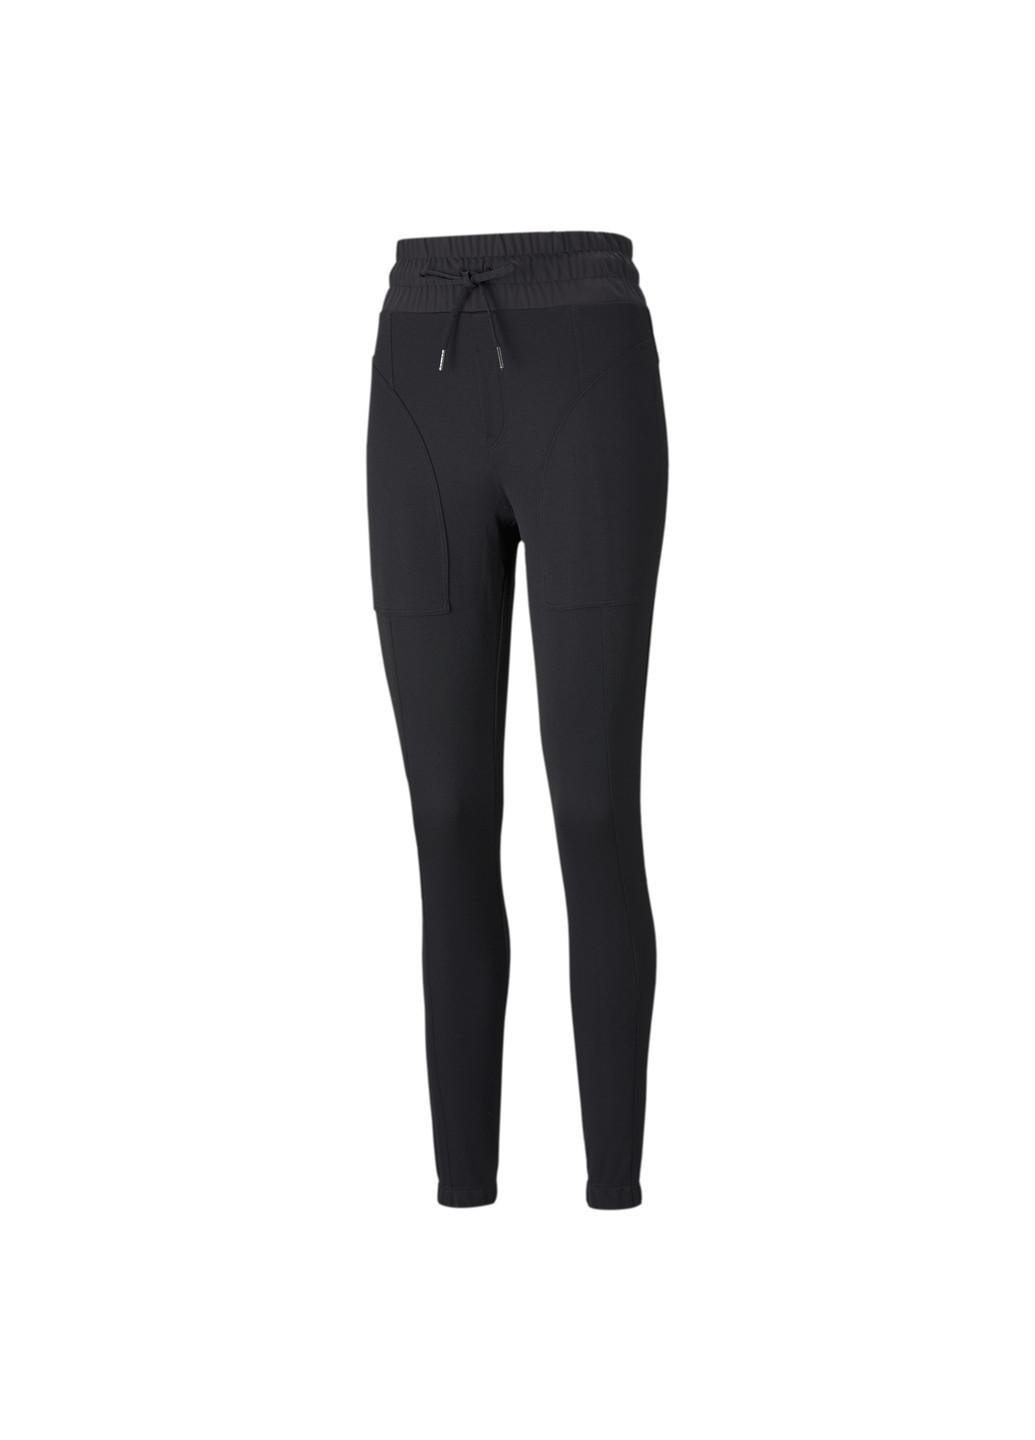 Черные демисезонные штаны forever luxe women's training joggers Puma